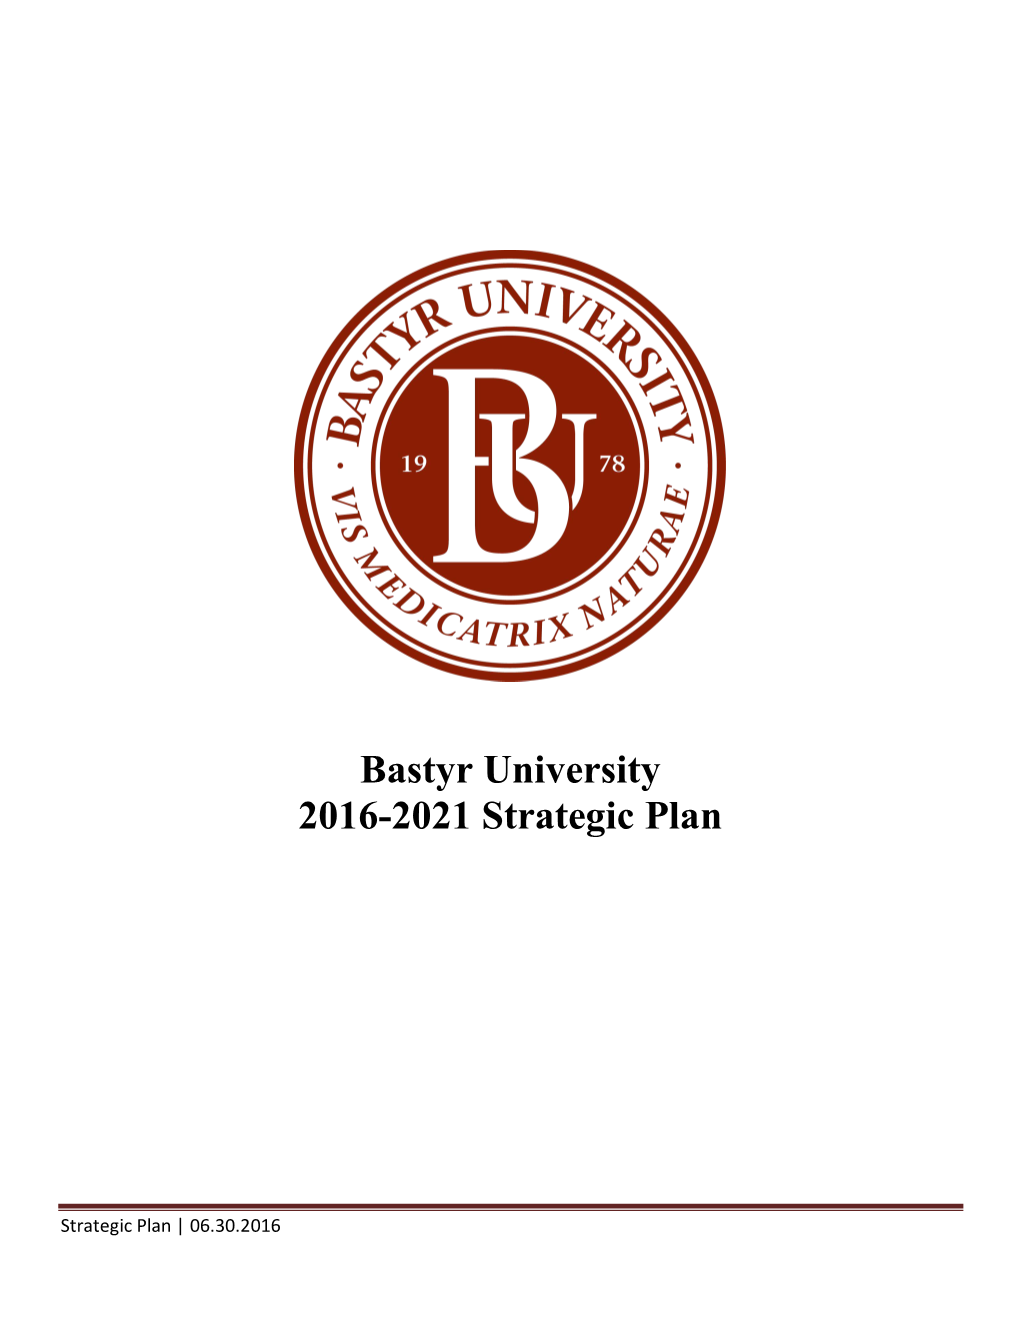 Bastyr University 2016-2021 Strategic Plan